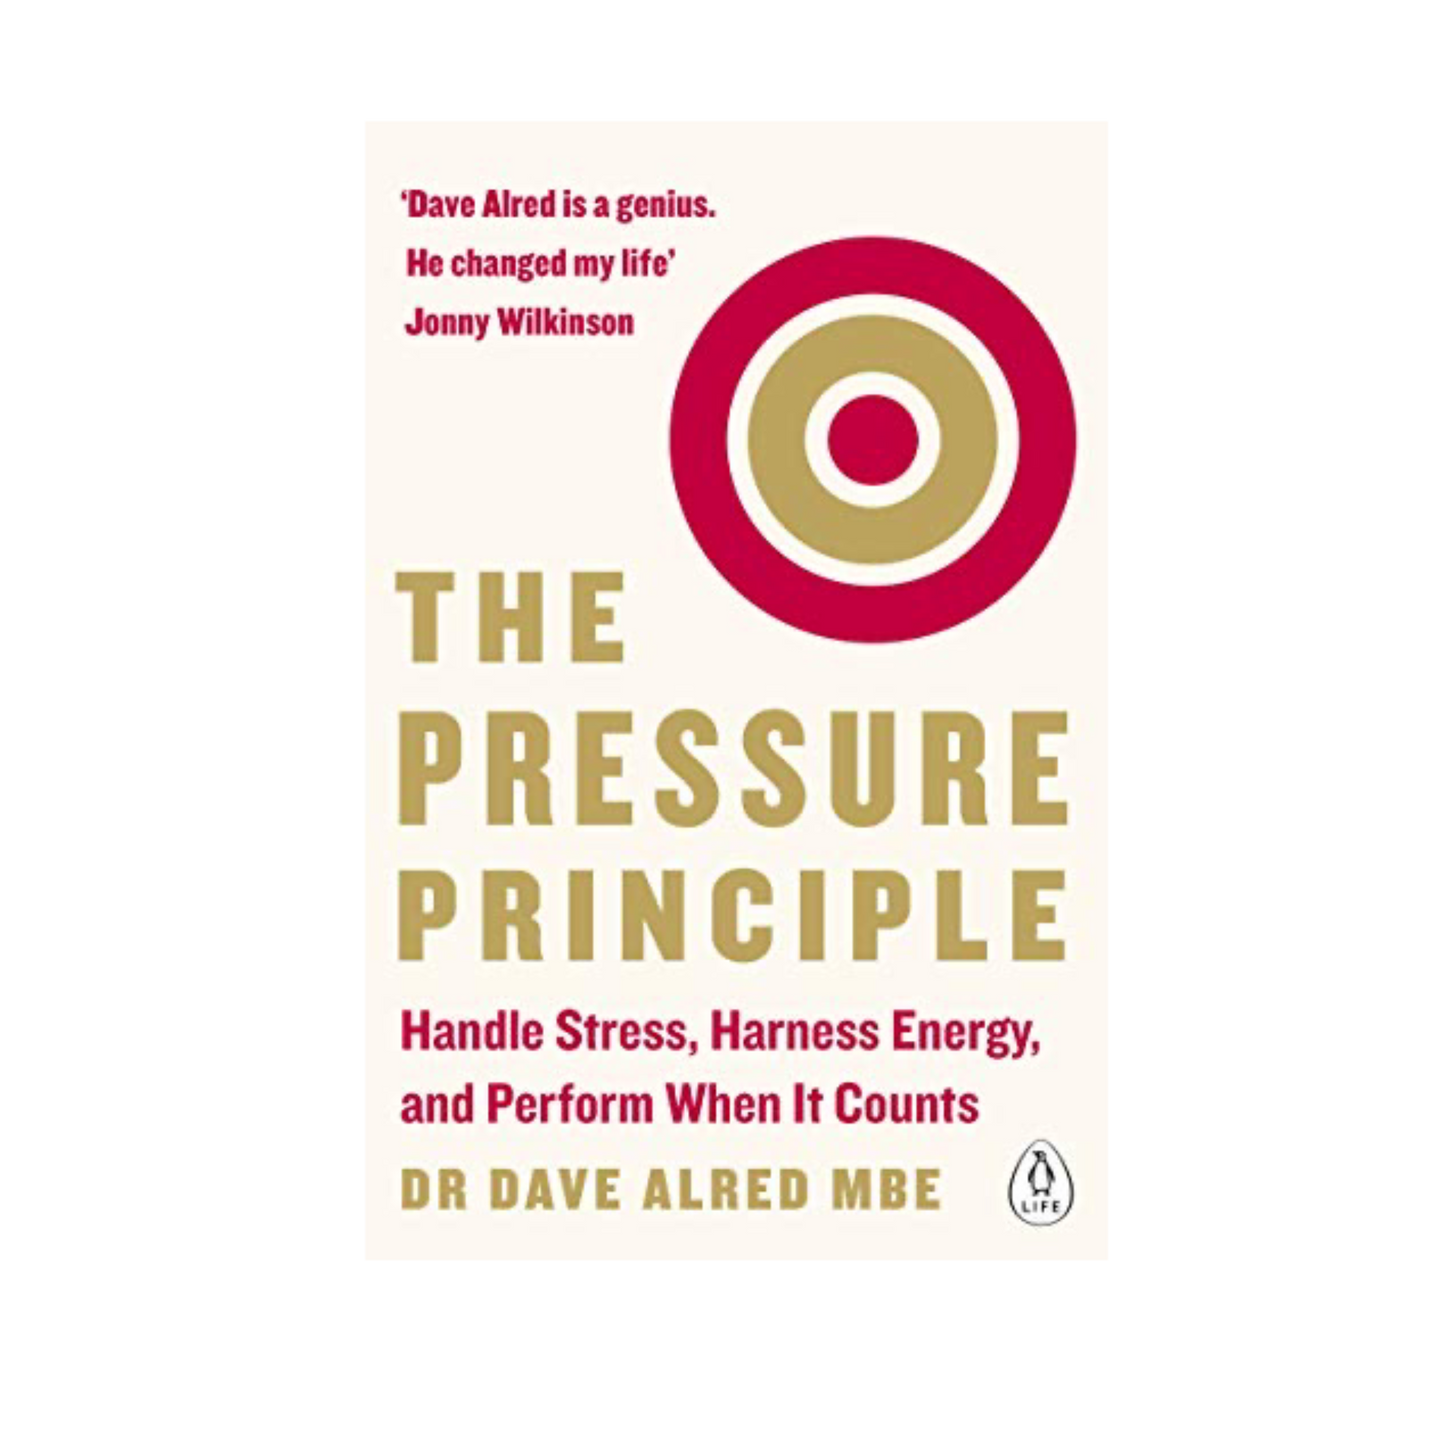 El principio de la presión: manejar el estrés, aprovechar la energía y actuar cuando sea necesario